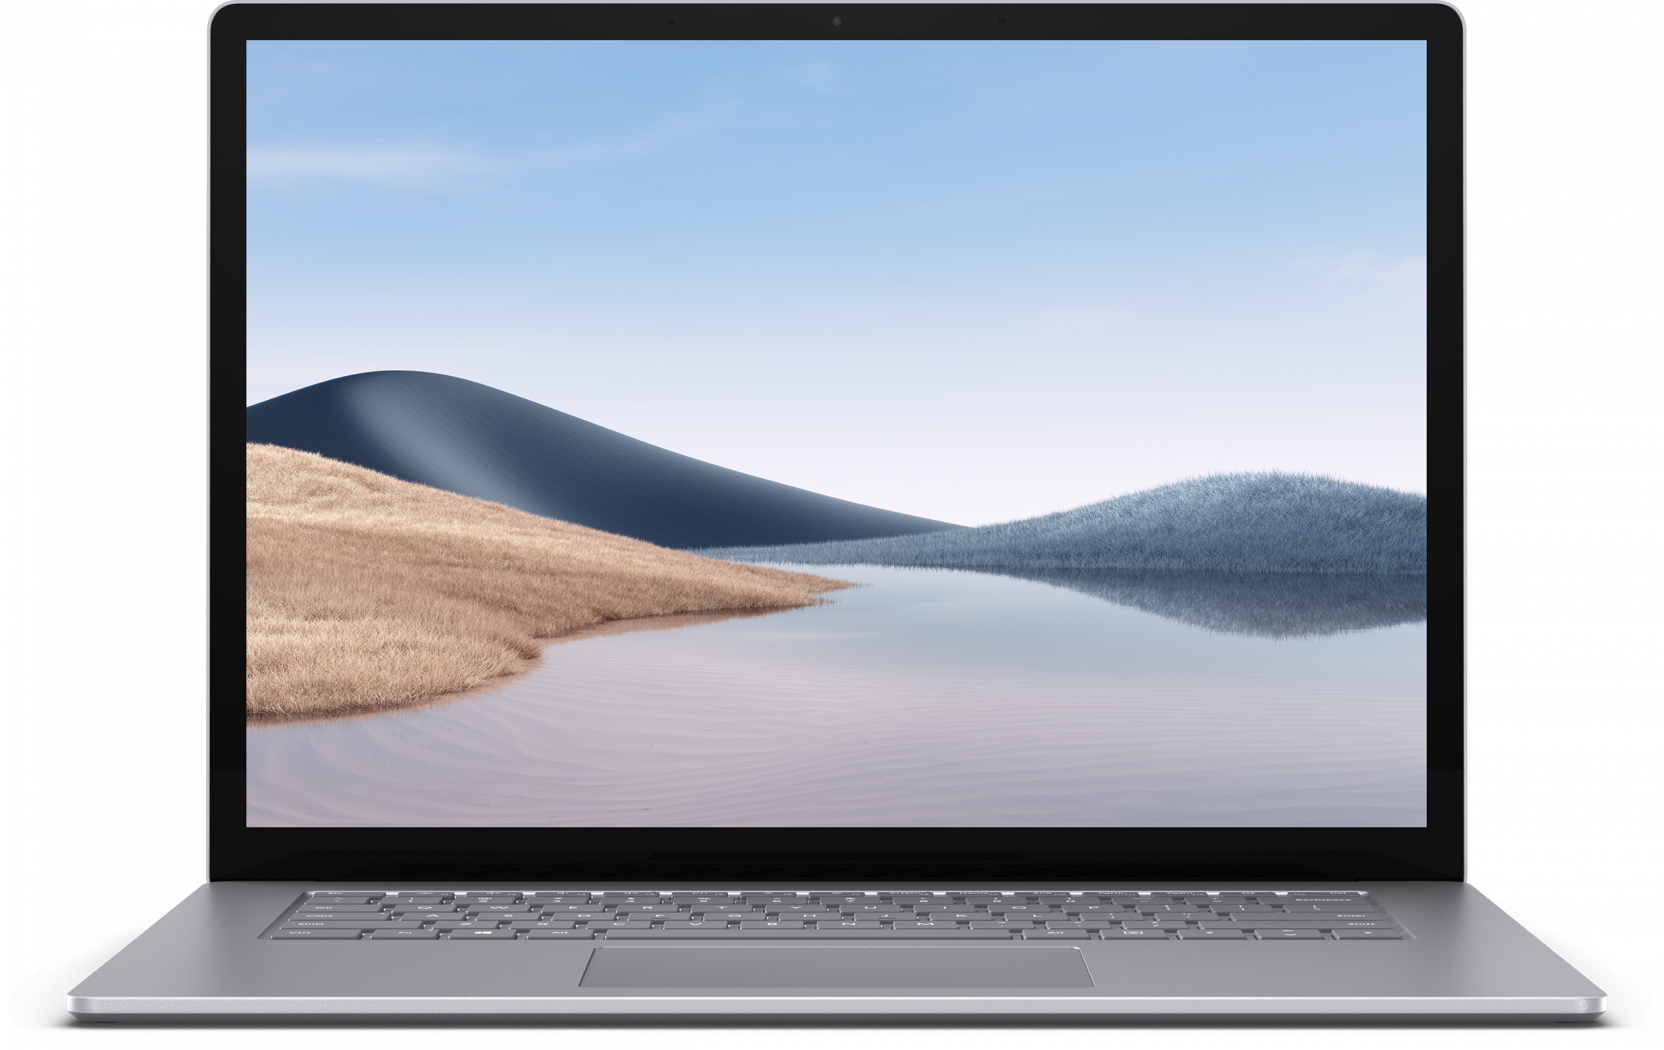 Surface Laptop kopen tijdens black friday vergelijk hier